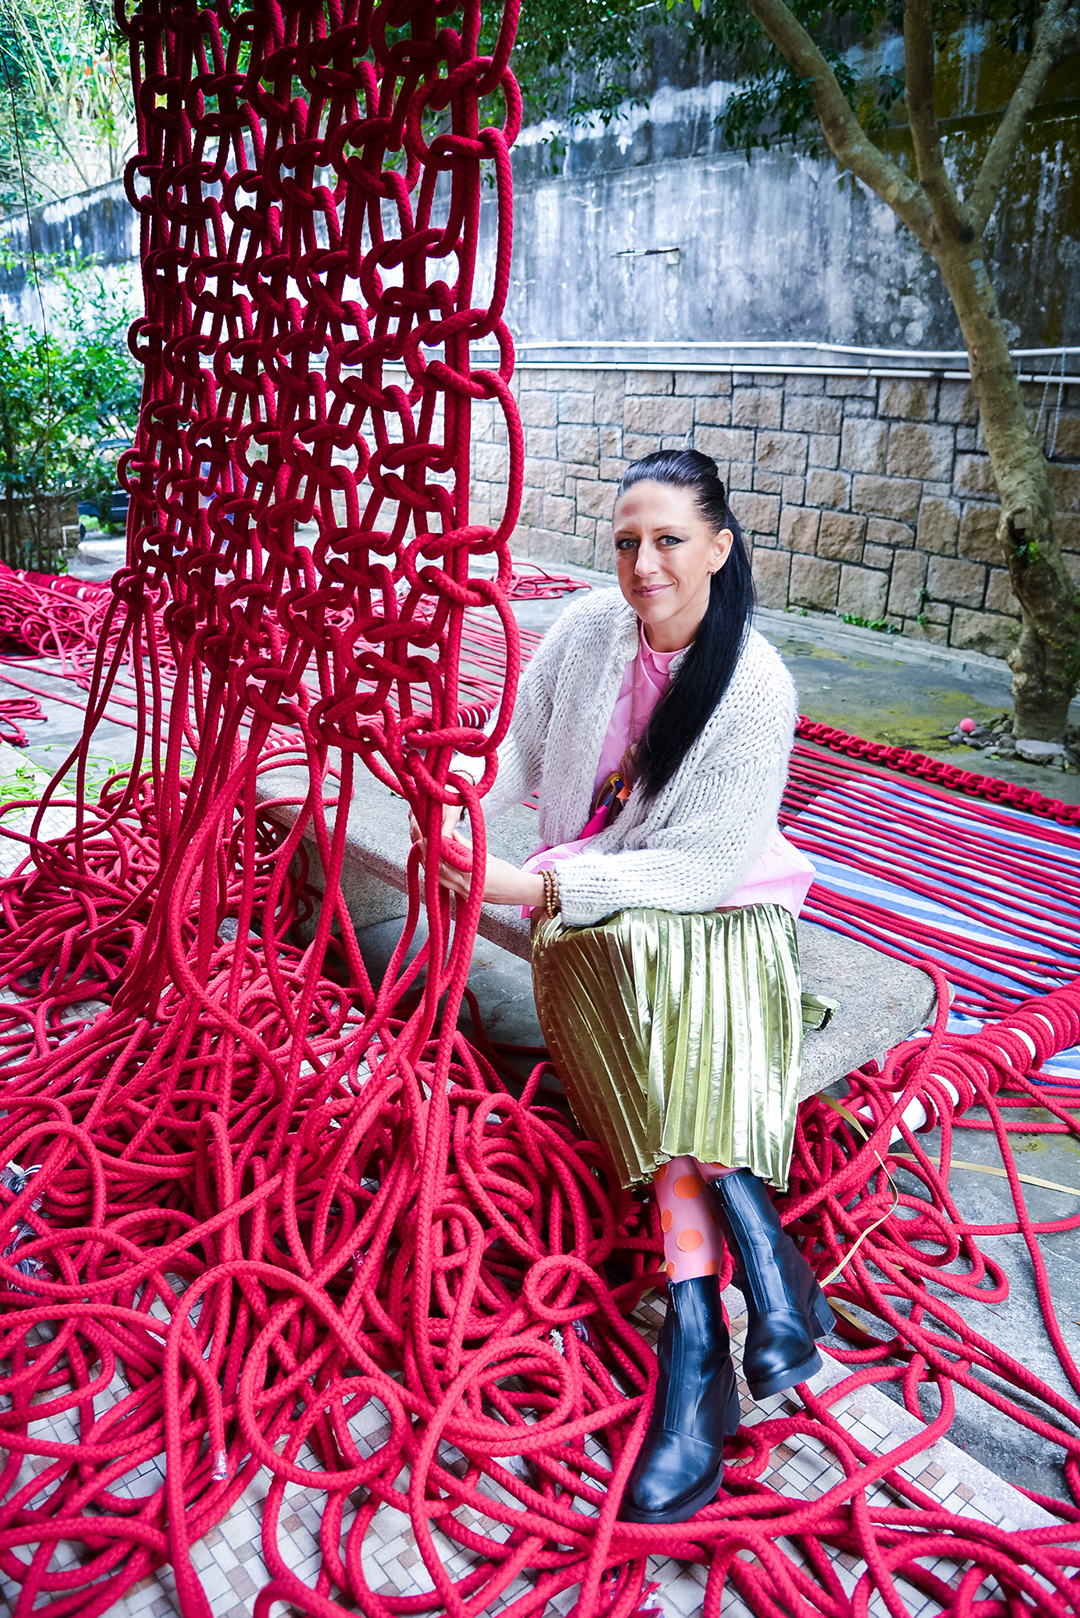 Australian fiber artist Natalie Miller made the world's biggest macram...